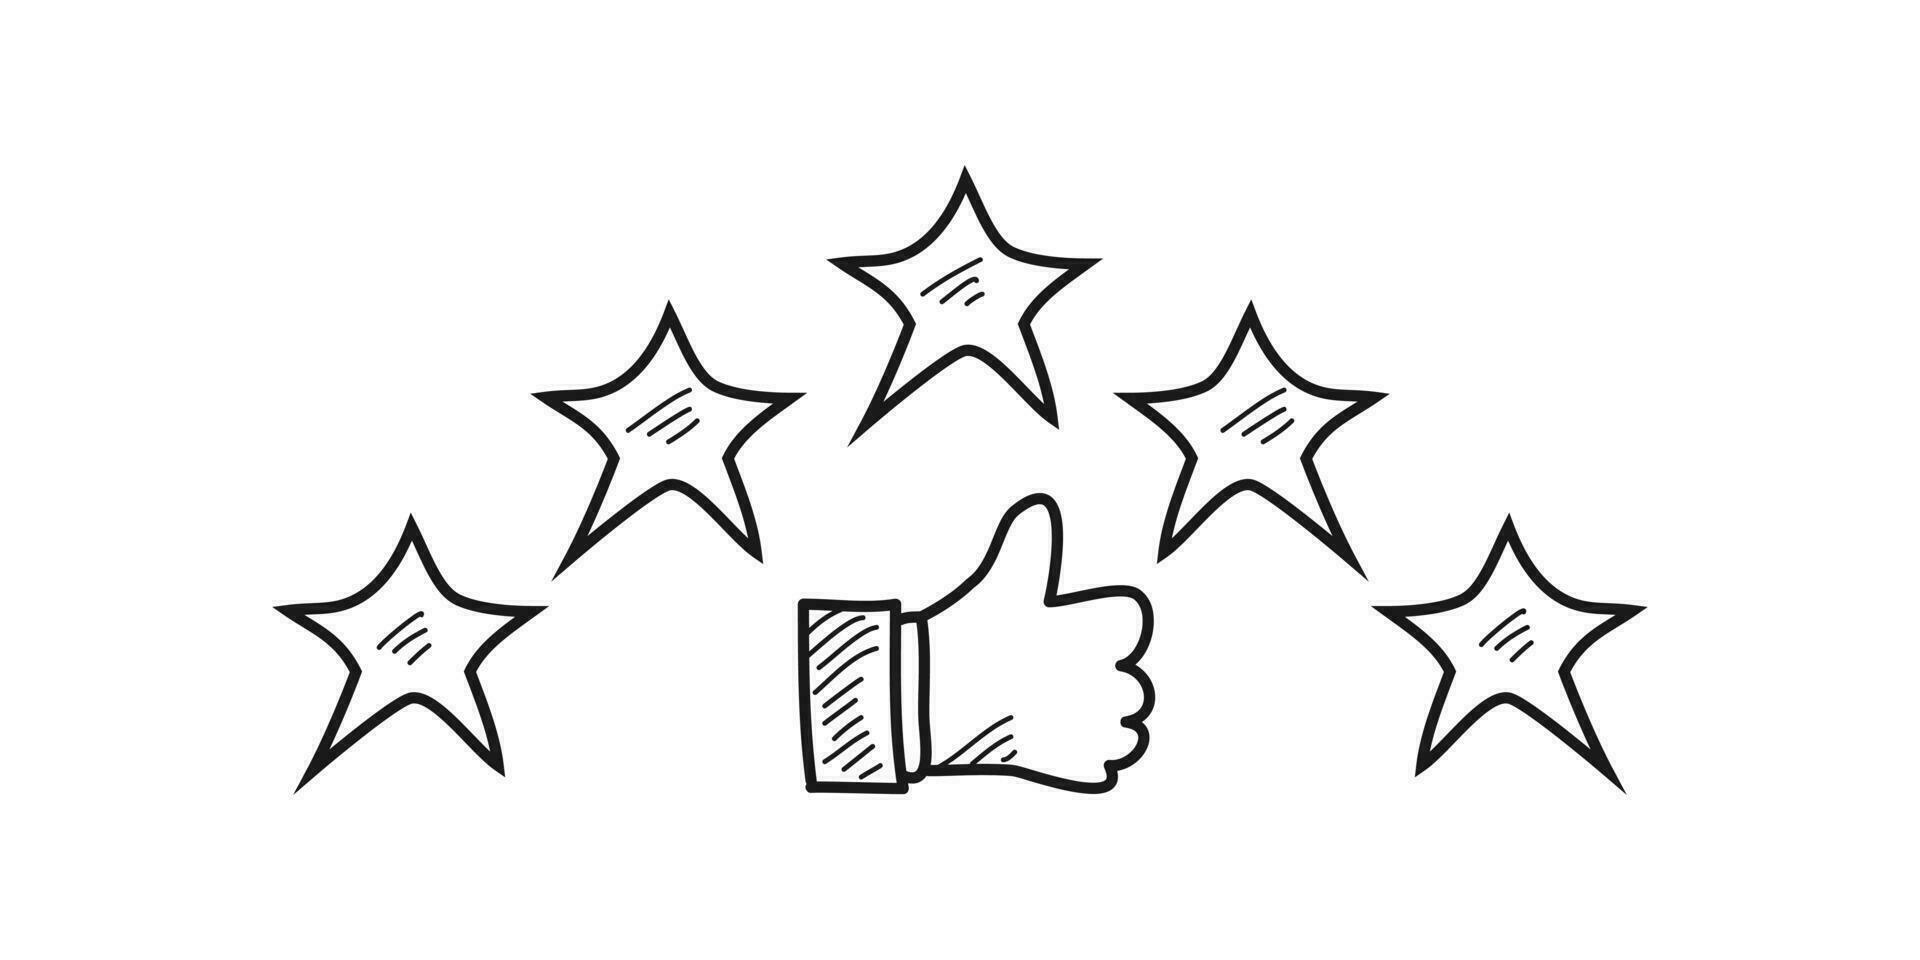 vijf ster beoordeling positief feedback. tekening duimen omhoog. handen van tevreden en gelukkig mensen Kiezen vijf goud sterren dat geven positief feedback. hand- getrokken stijl. vector illustratie